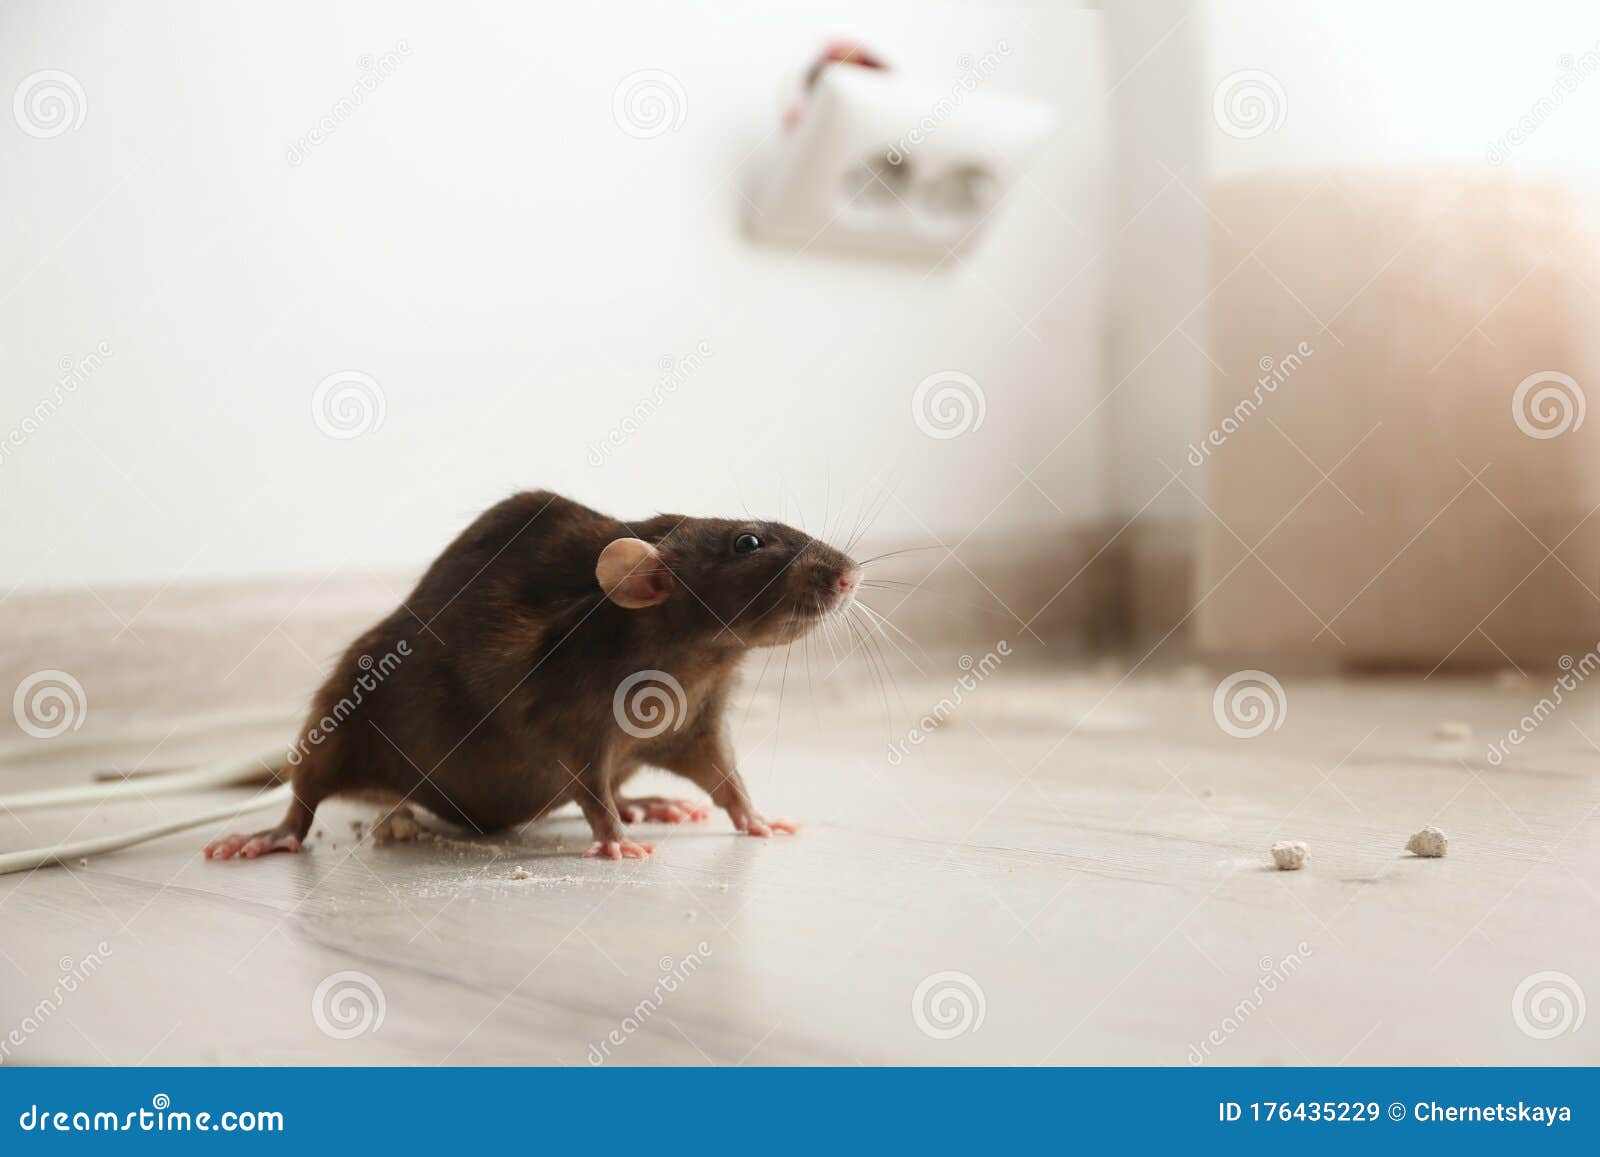 brown rat on floor. pest control